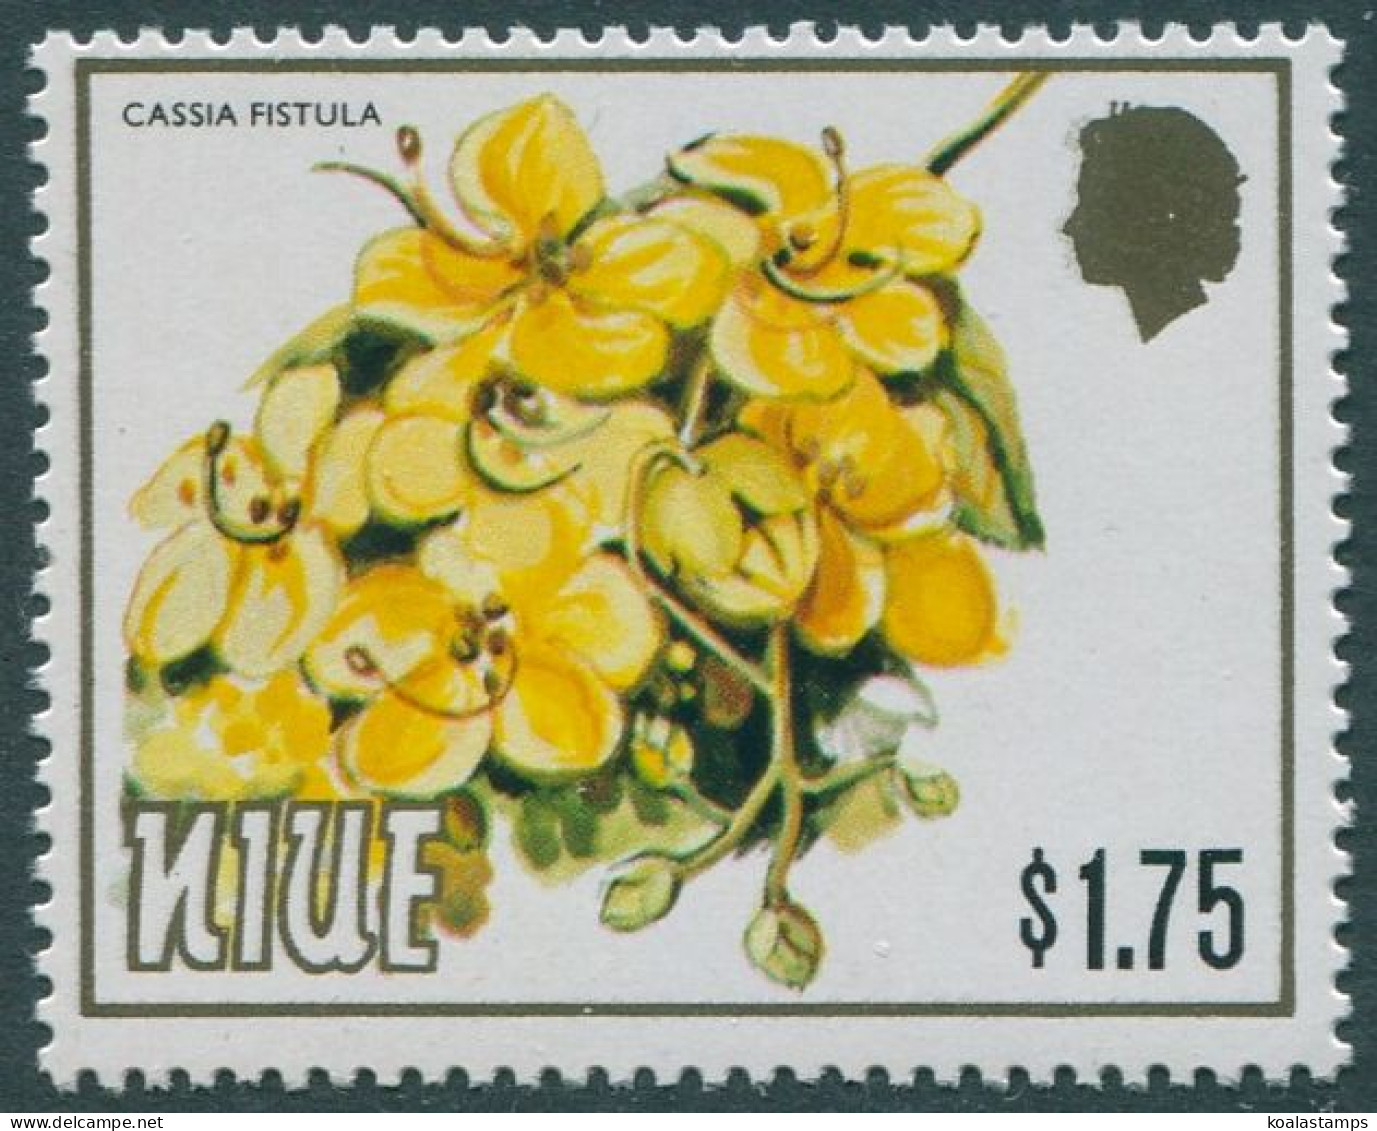 Niue 1984 SG537 $1.75 Flower Cassia Fistula MNH - Niue